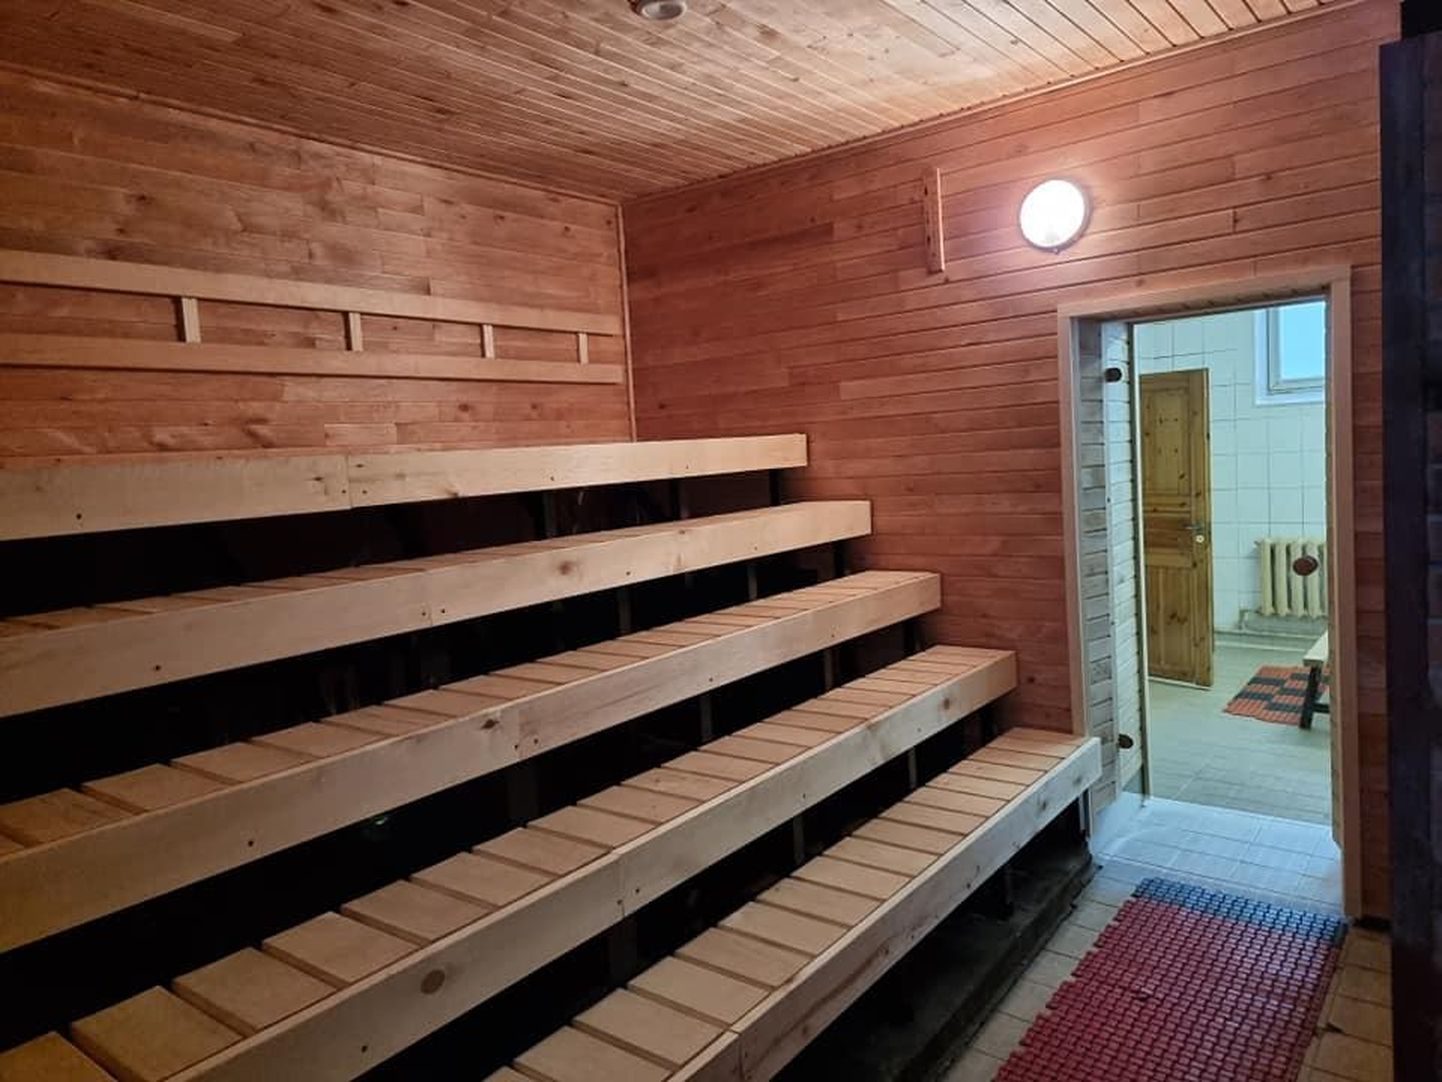 Tihemetsa sauna renoveerimine lõppes sel nädalal.